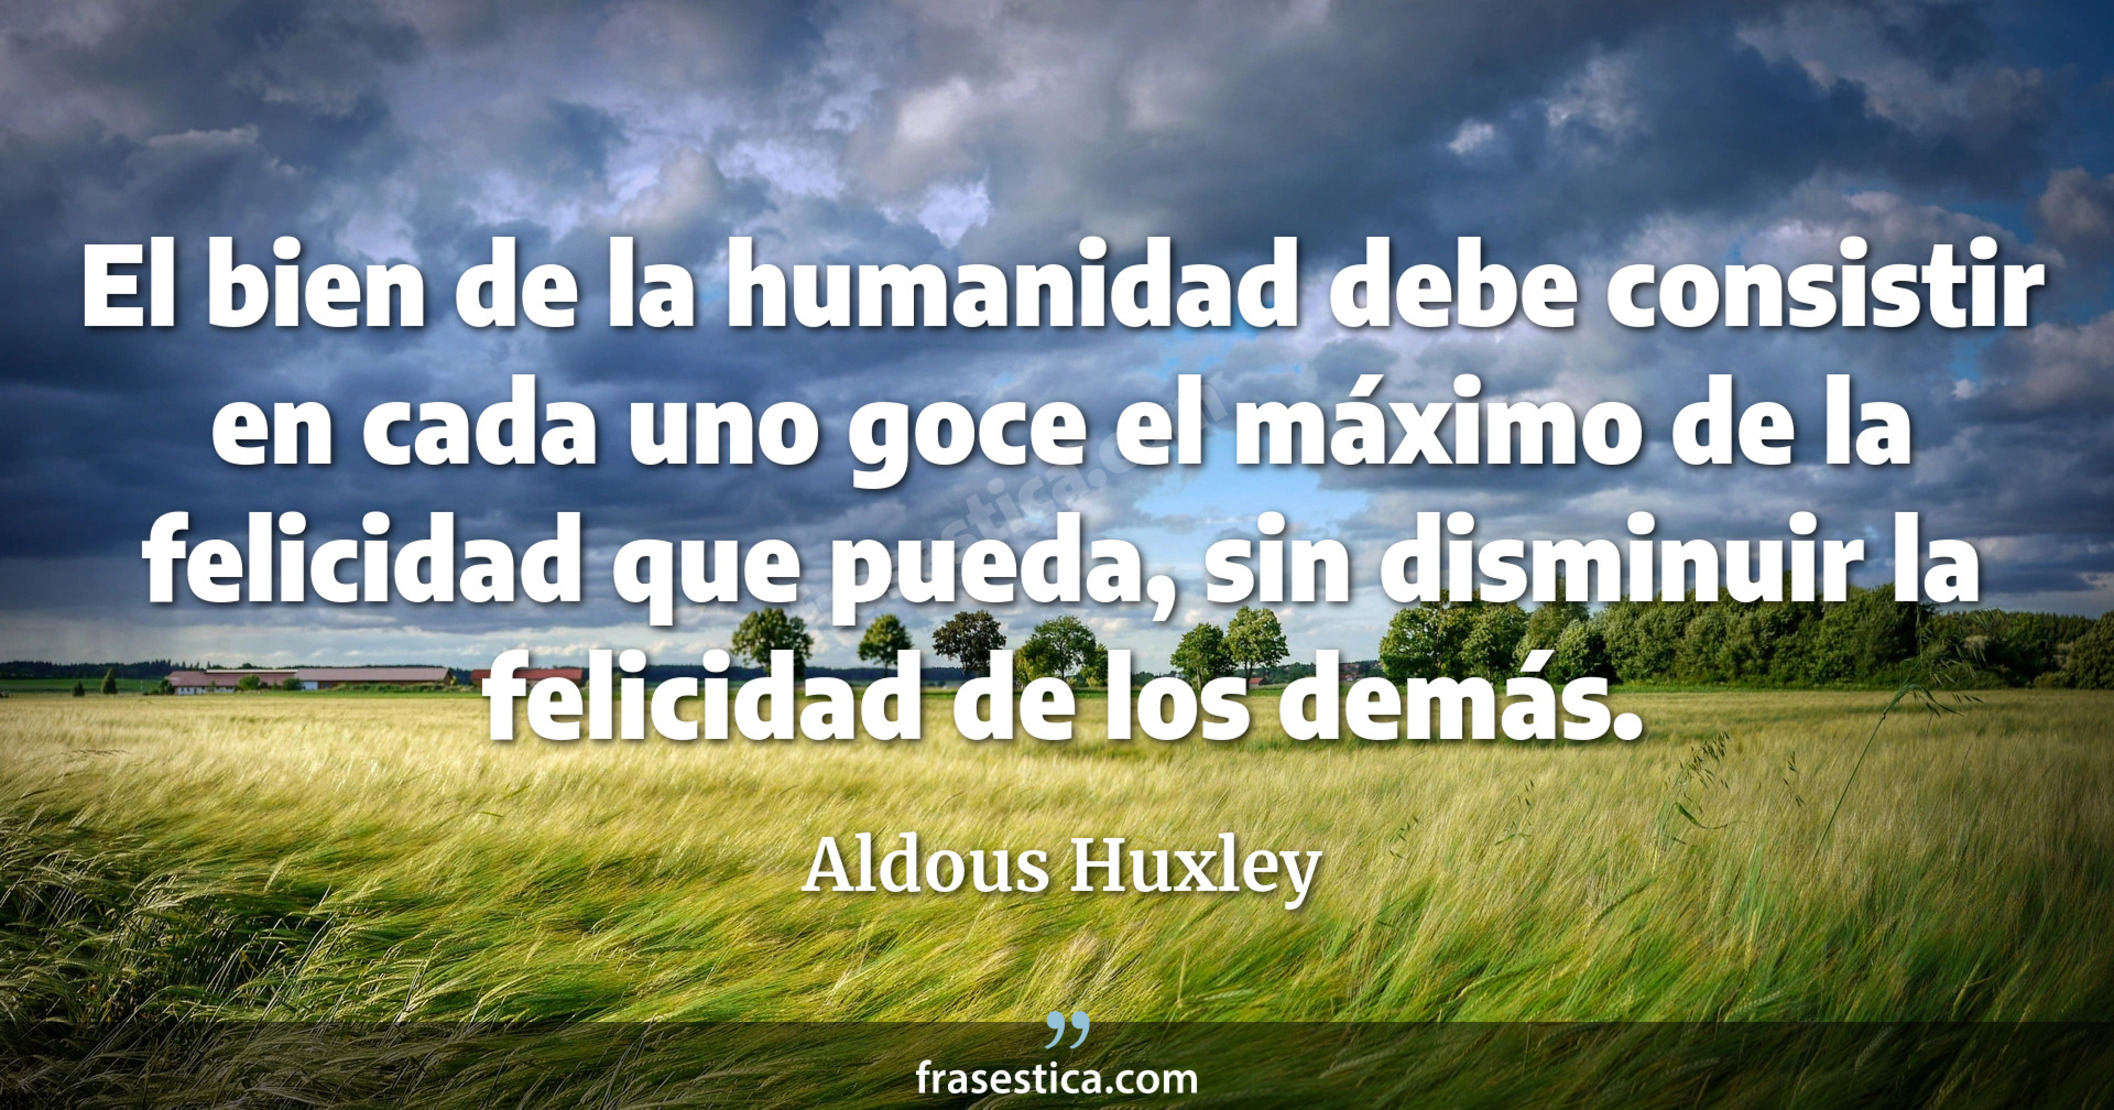 El bien de la humanidad debe consistir en cada uno goce el máximo de la felicidad que pueda, sin disminuir la felicidad de los demás. - Aldous Huxley